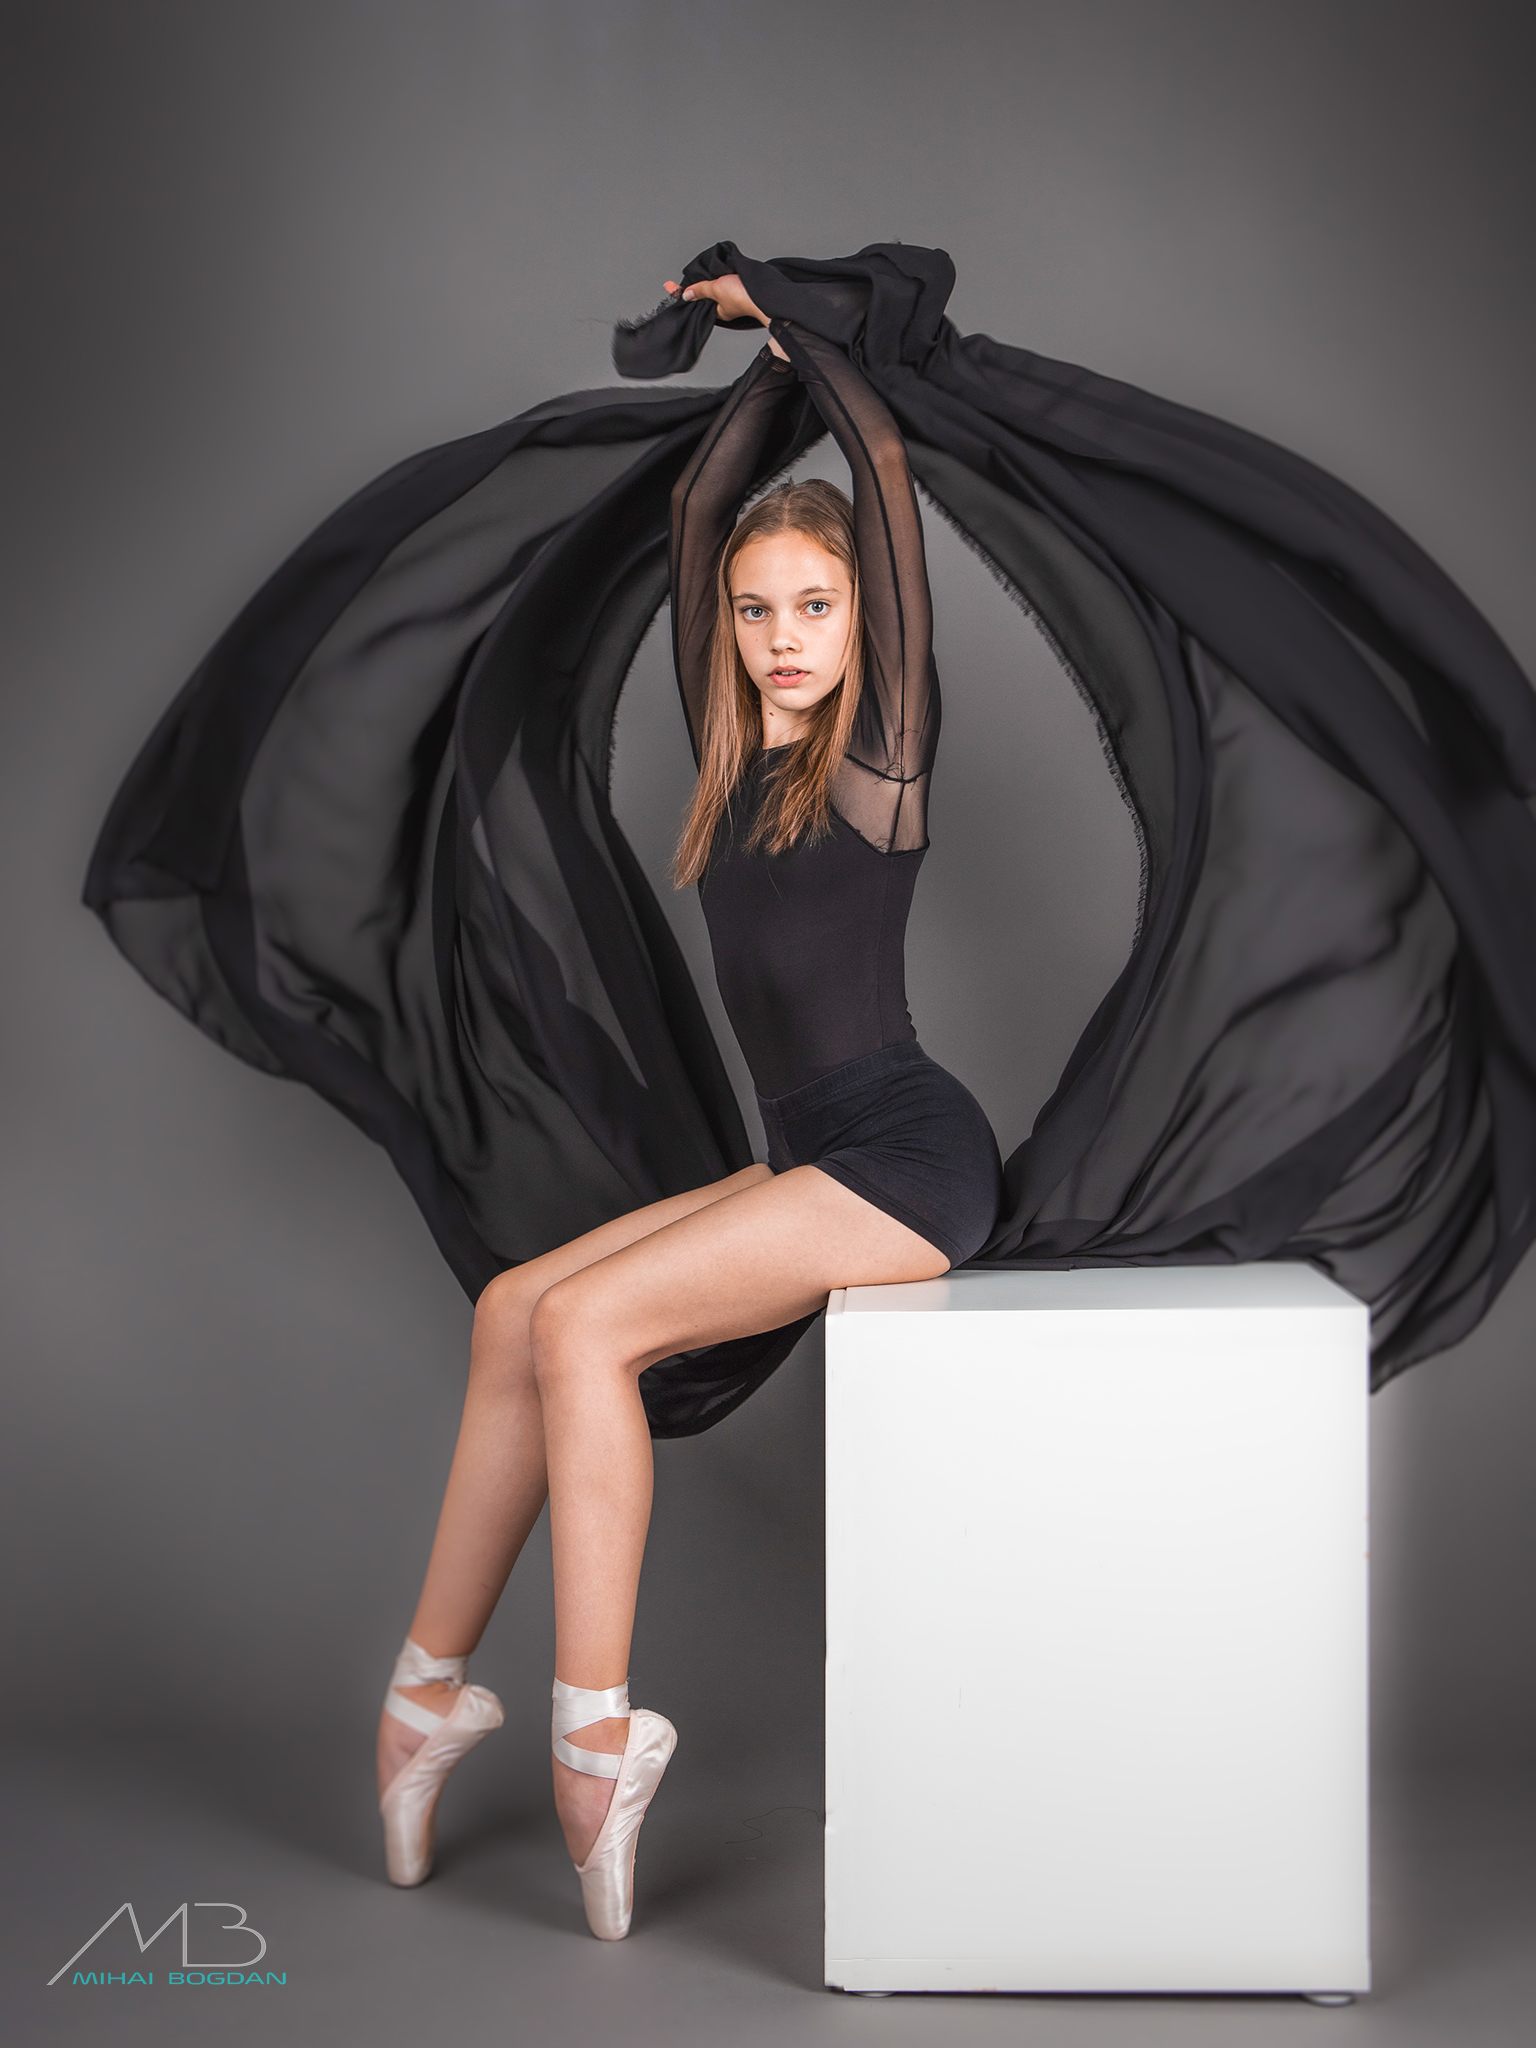 Mihai Romeo Bogdan Women Ballerina Black Clothing Brunette Ballet Slippers Studio 1536x2048